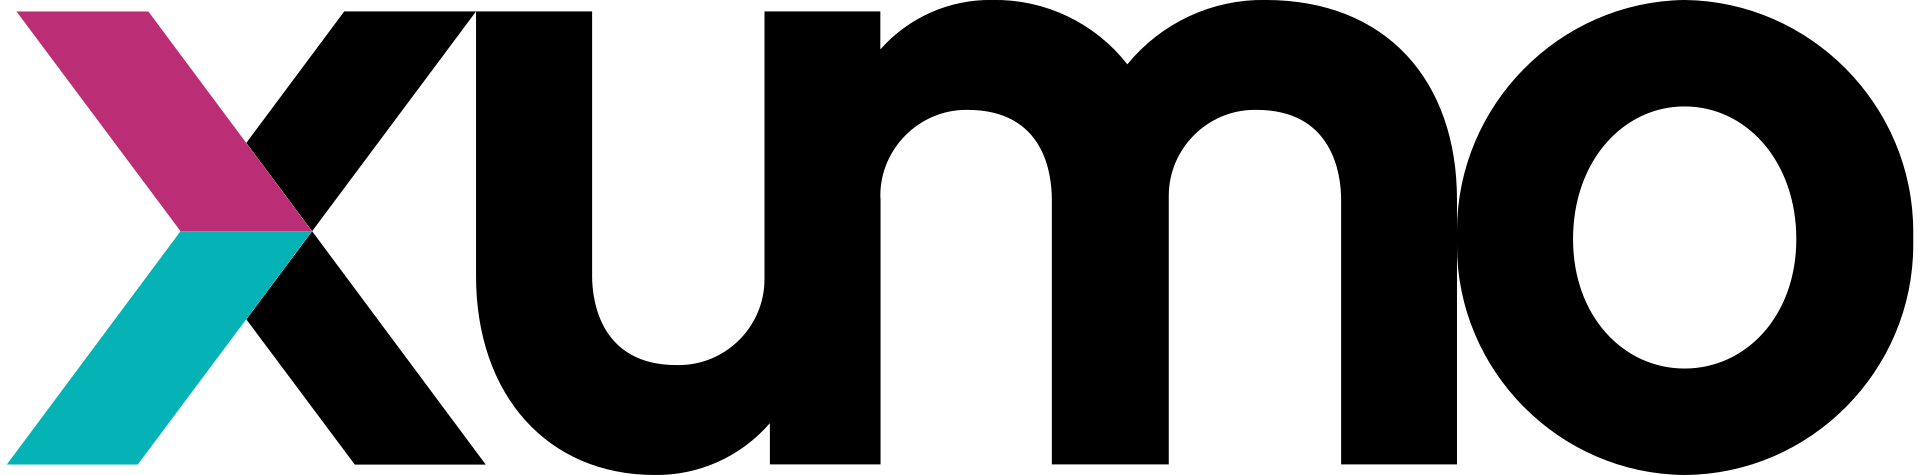 XUMO-logo-2022.svg-1.png